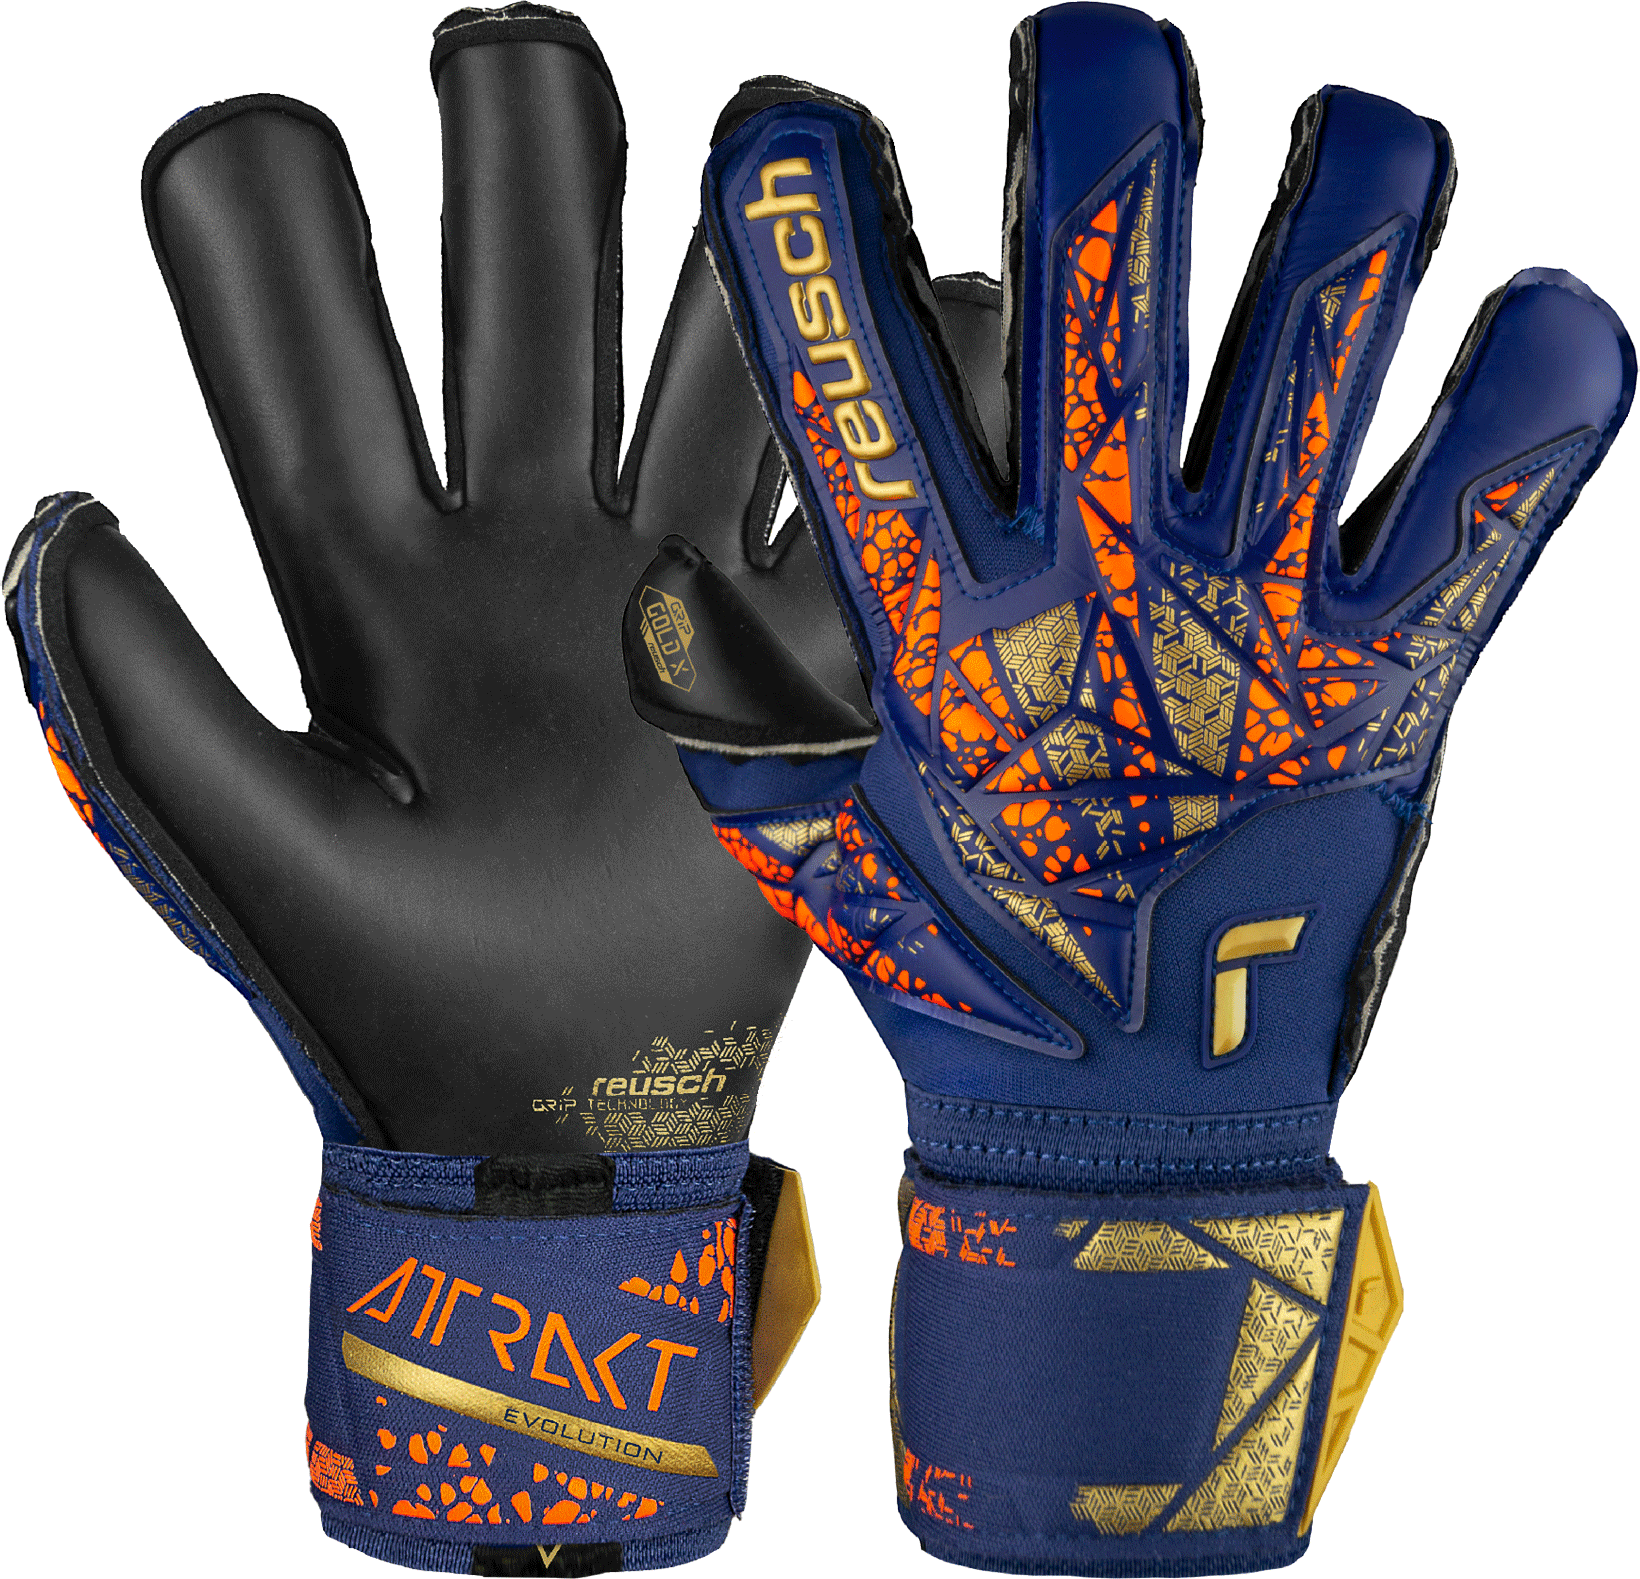 Goalkeeper's Reusch Attrakt Gold X Evolution Goalkeeper Gloves